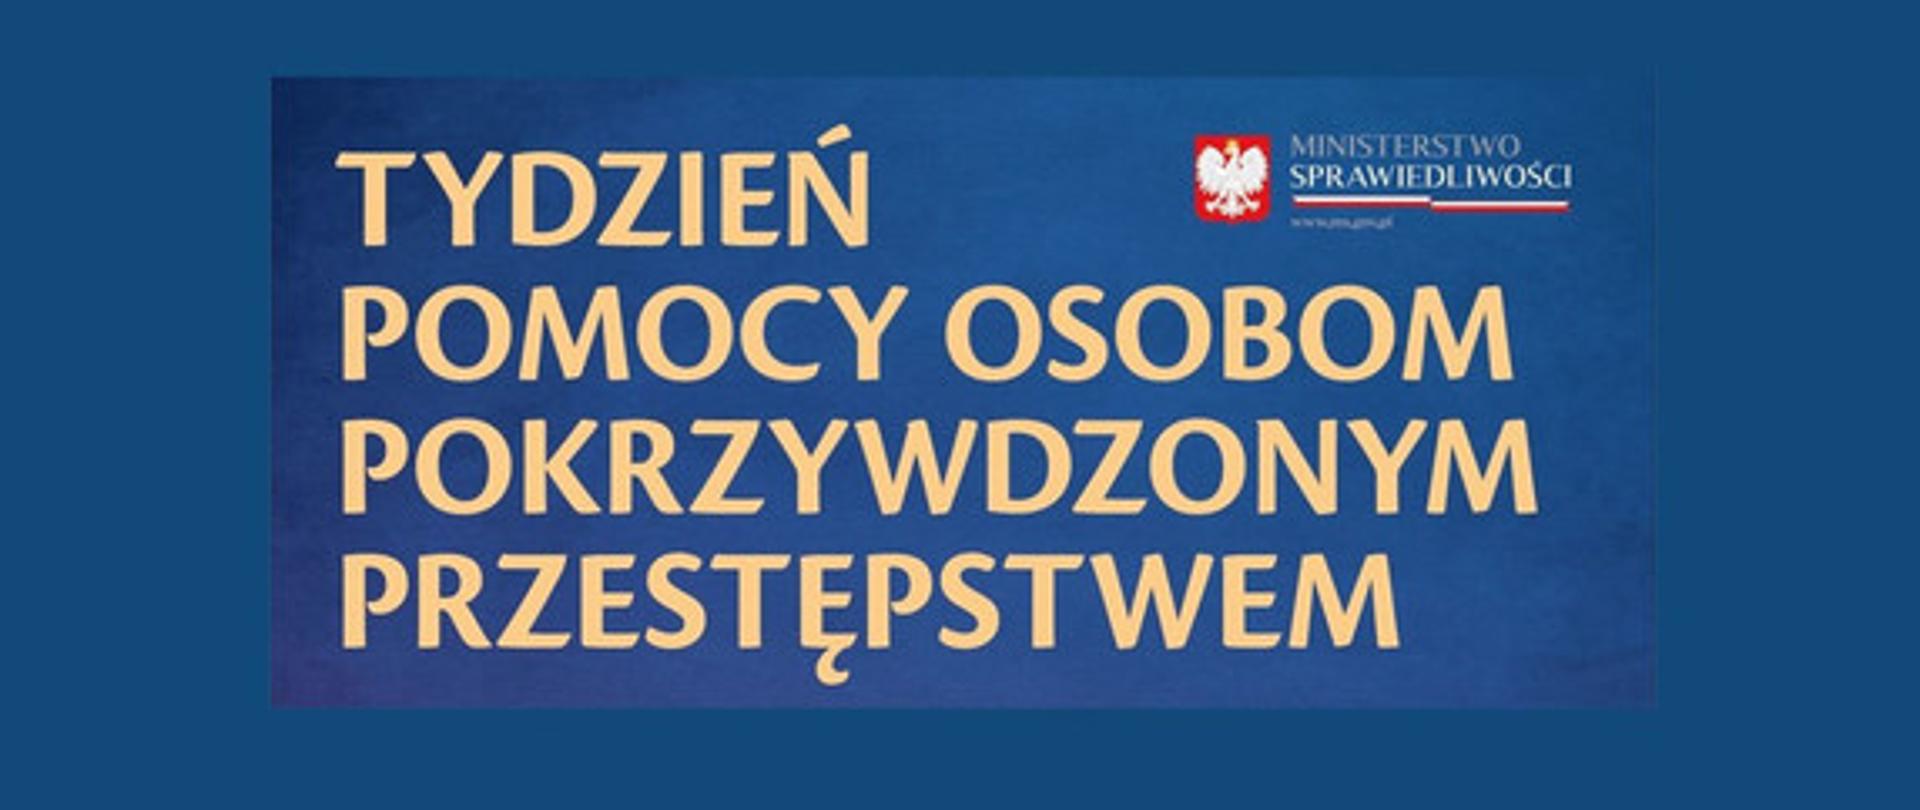 Niebieskie tło, złoty napis Tydzień pomocy osobom pokrzywdzonym przestępstwem, w prawym górnym rogu logo Ministerstwa Sprawiedliwości, polskie godło